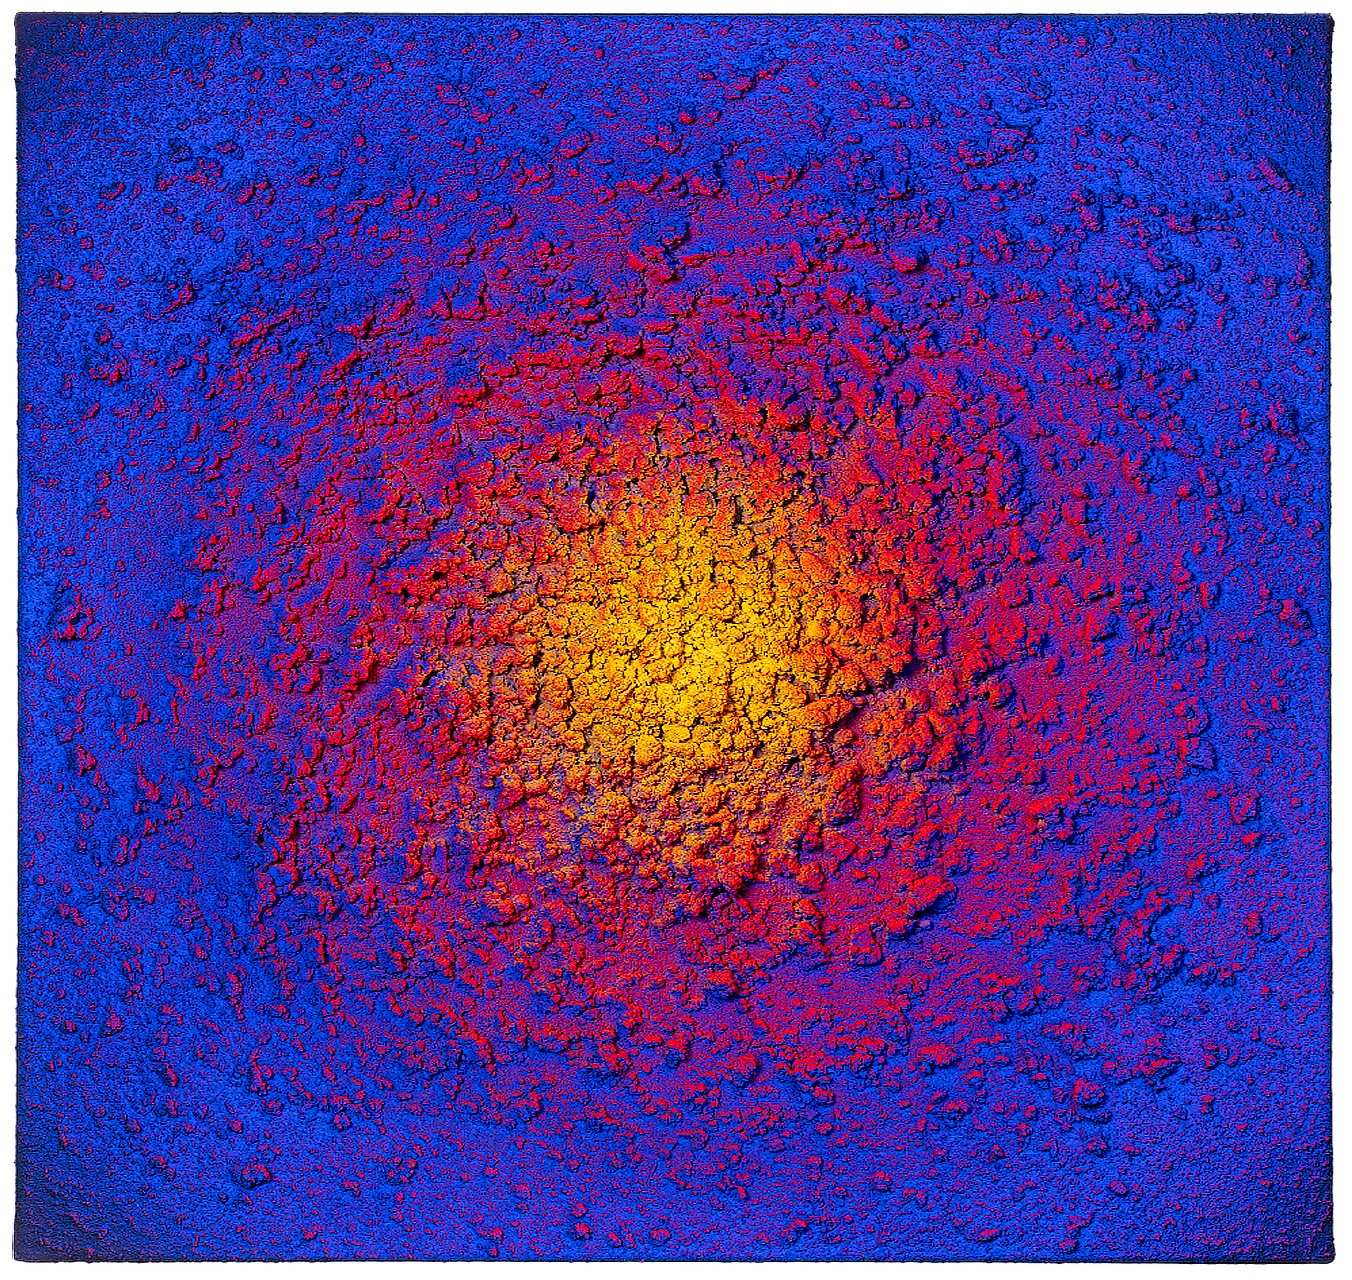 18.16_InterstellarInterstellar Red Blue Yellow 18.16_Red_Blue_Yellow_50x50 - SAMUEL DEJONG - Galeries Bartoux